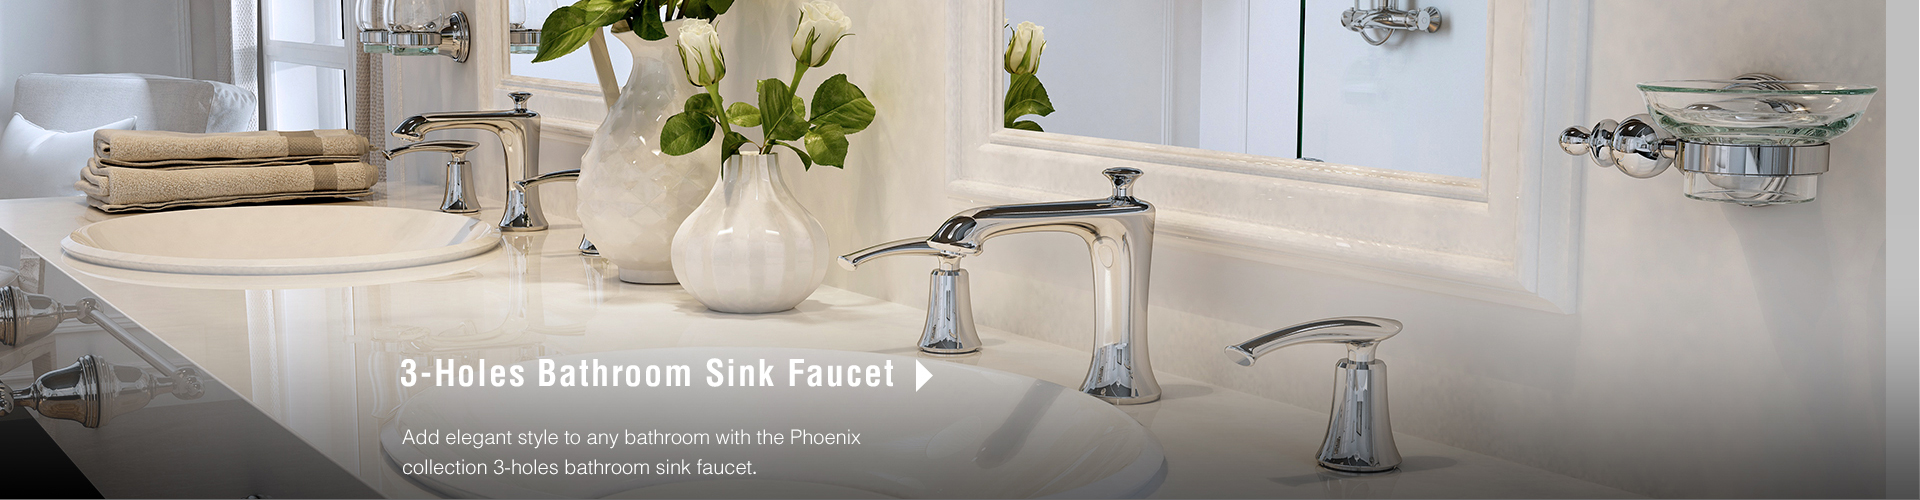 5.HIMARK Phoenix bathroom sink faucet 